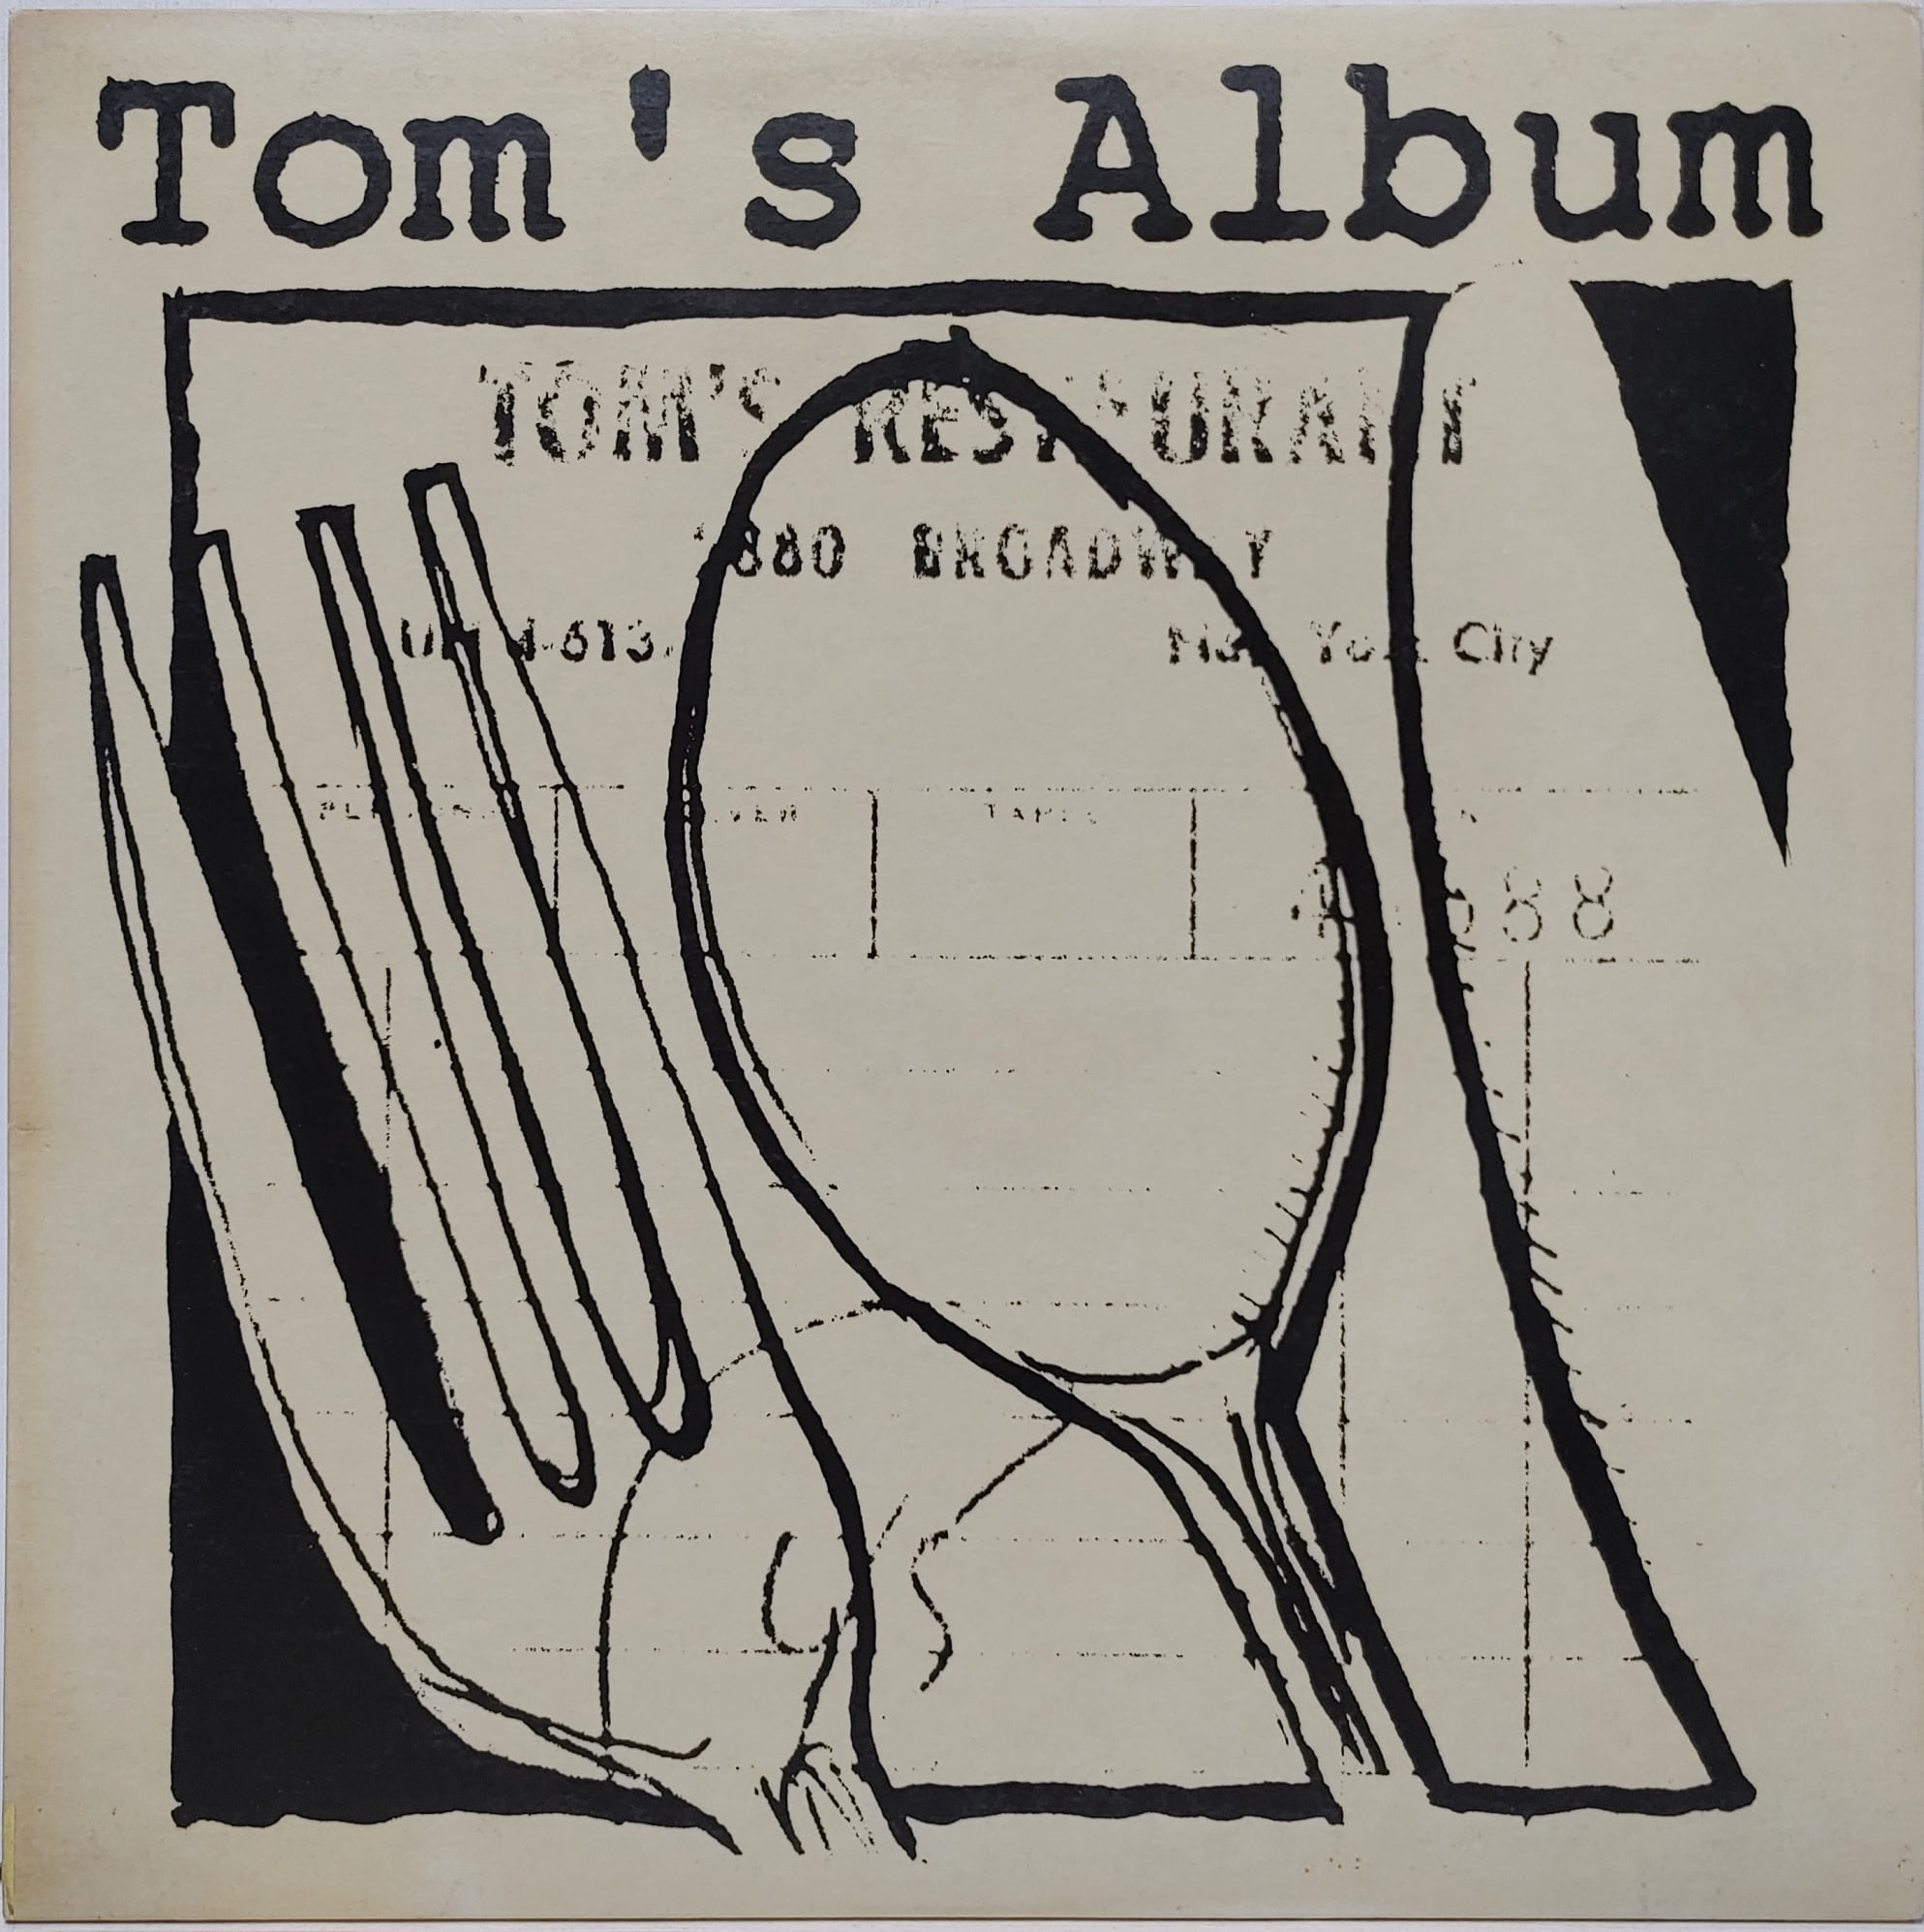 Tom’s Album